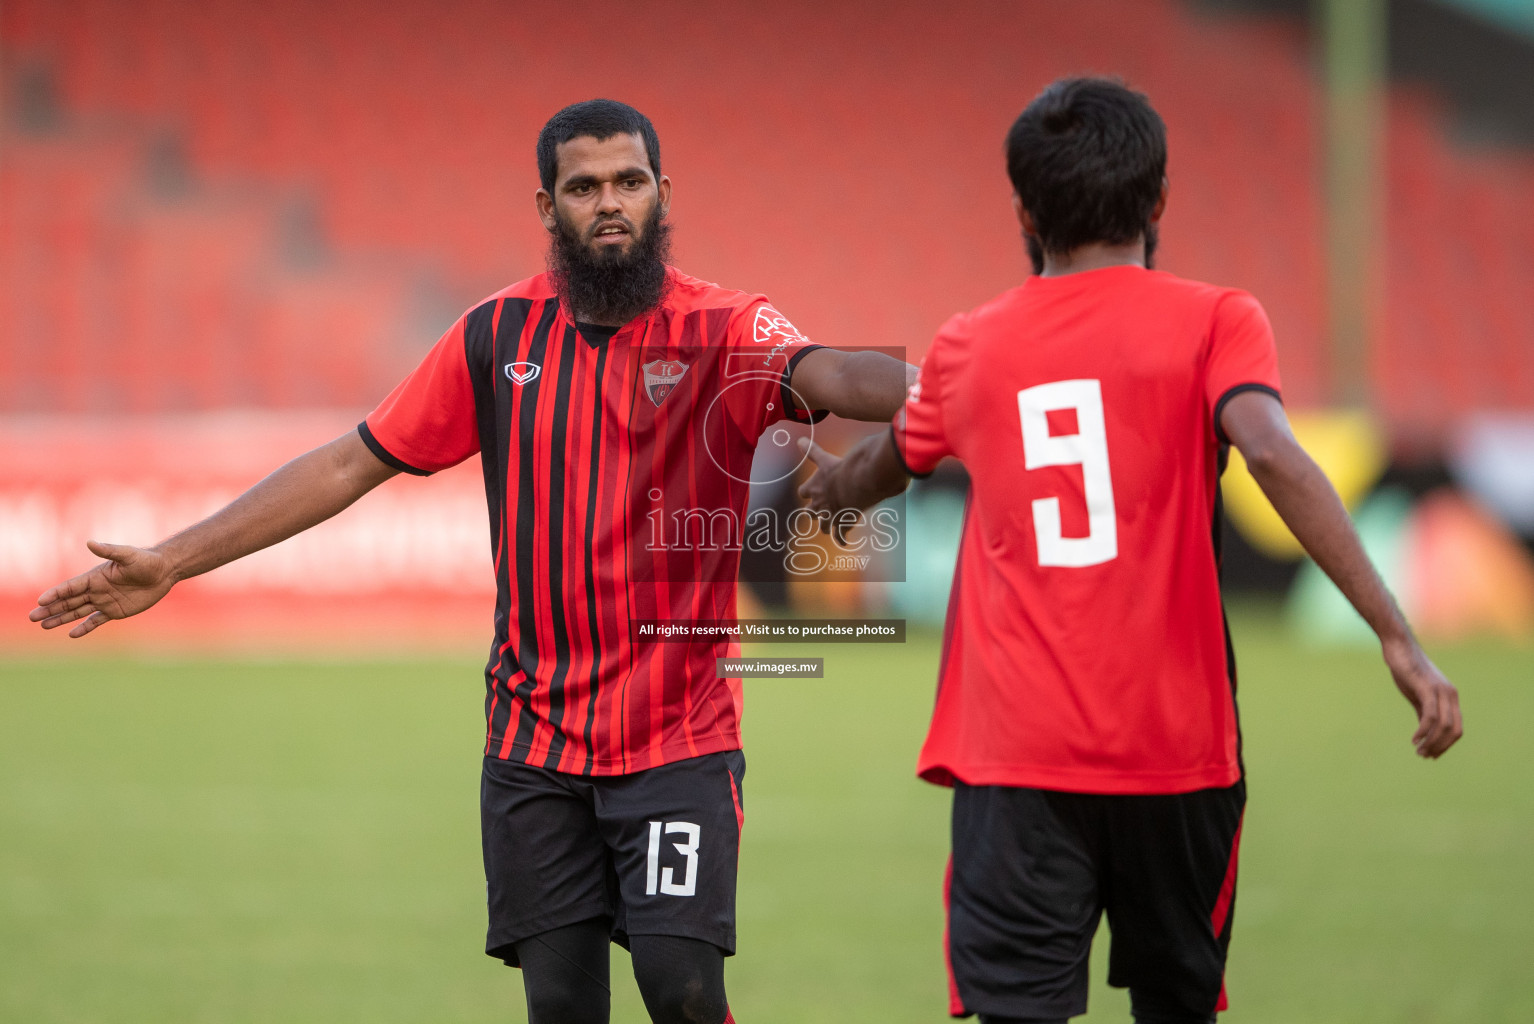 Dhiraagu Dhivehi Premier League 2019 - TC Sports Club vs United Victory TC Sports Club vs United Victory in Dhiraagu Dhivehi Premier League 2019 held in Male', Maldives on 25th June 2019 Photos: Shuadh Abdul Sattar/images.mv